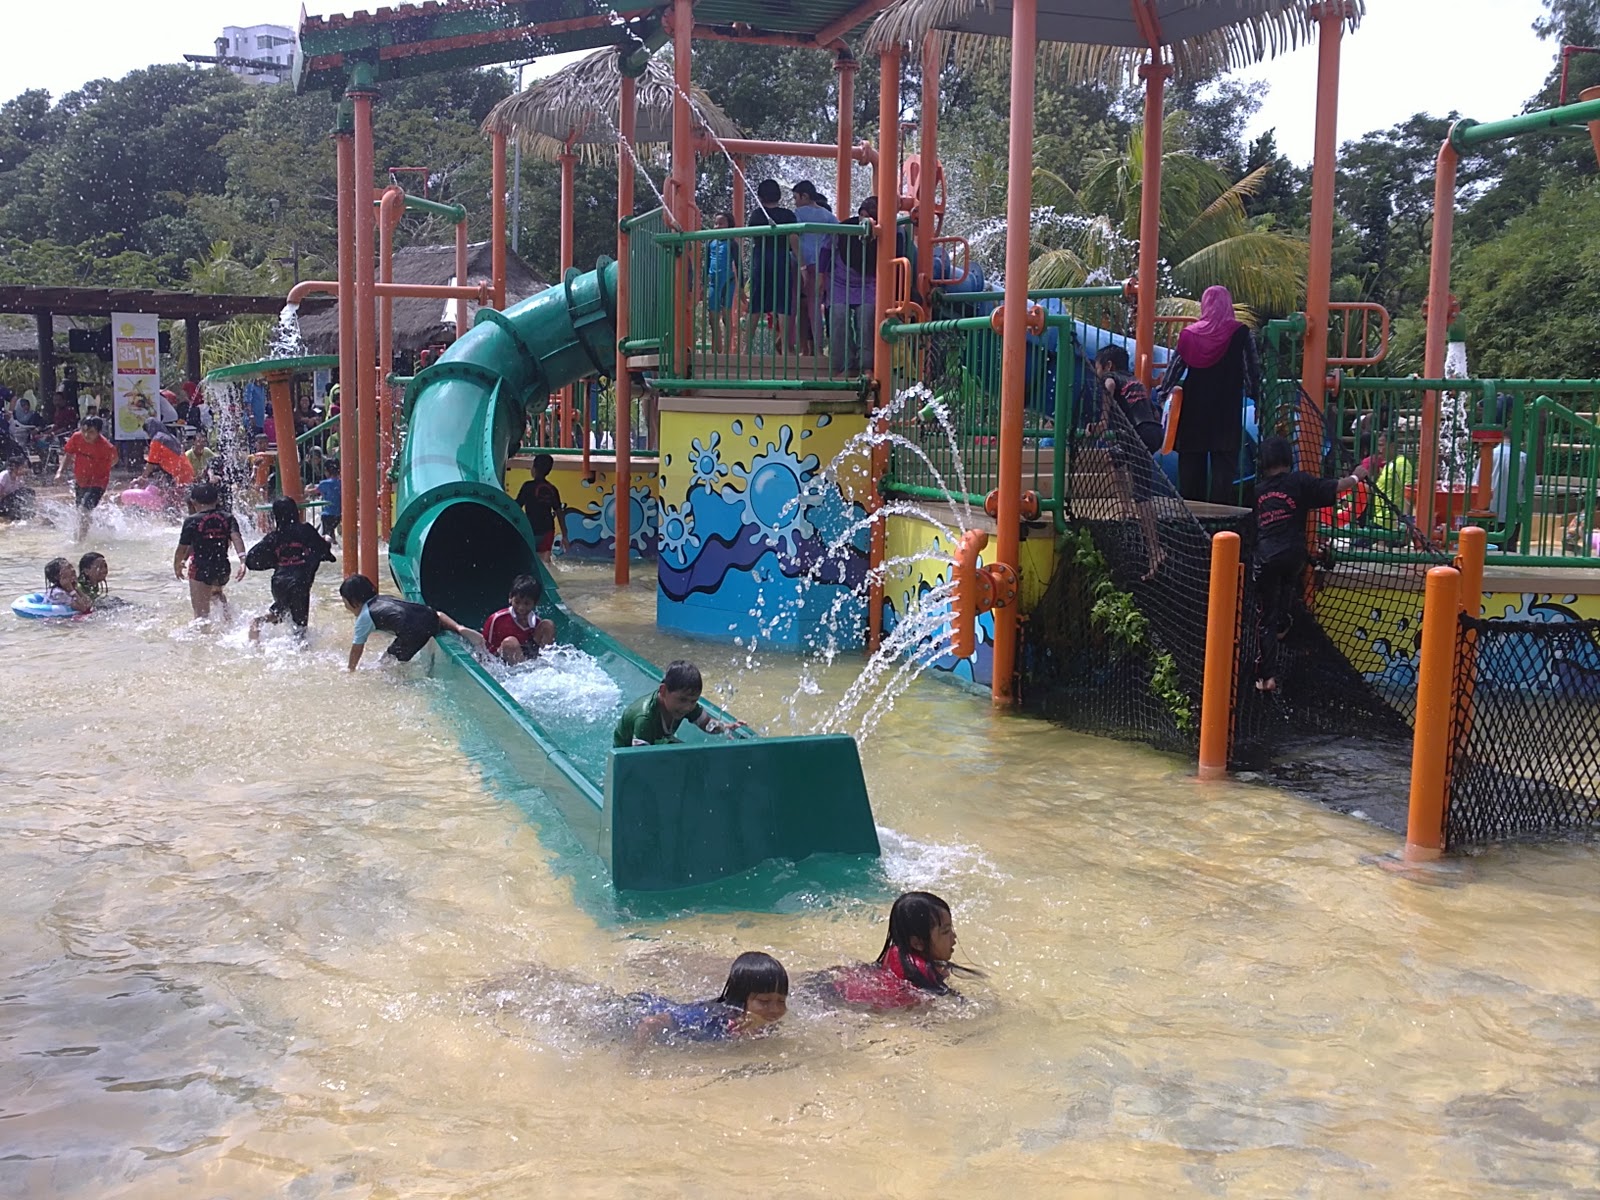 ALAZAQ (ALif AZim AQil): The Carnival Water Theme Park @ Sg. Petani